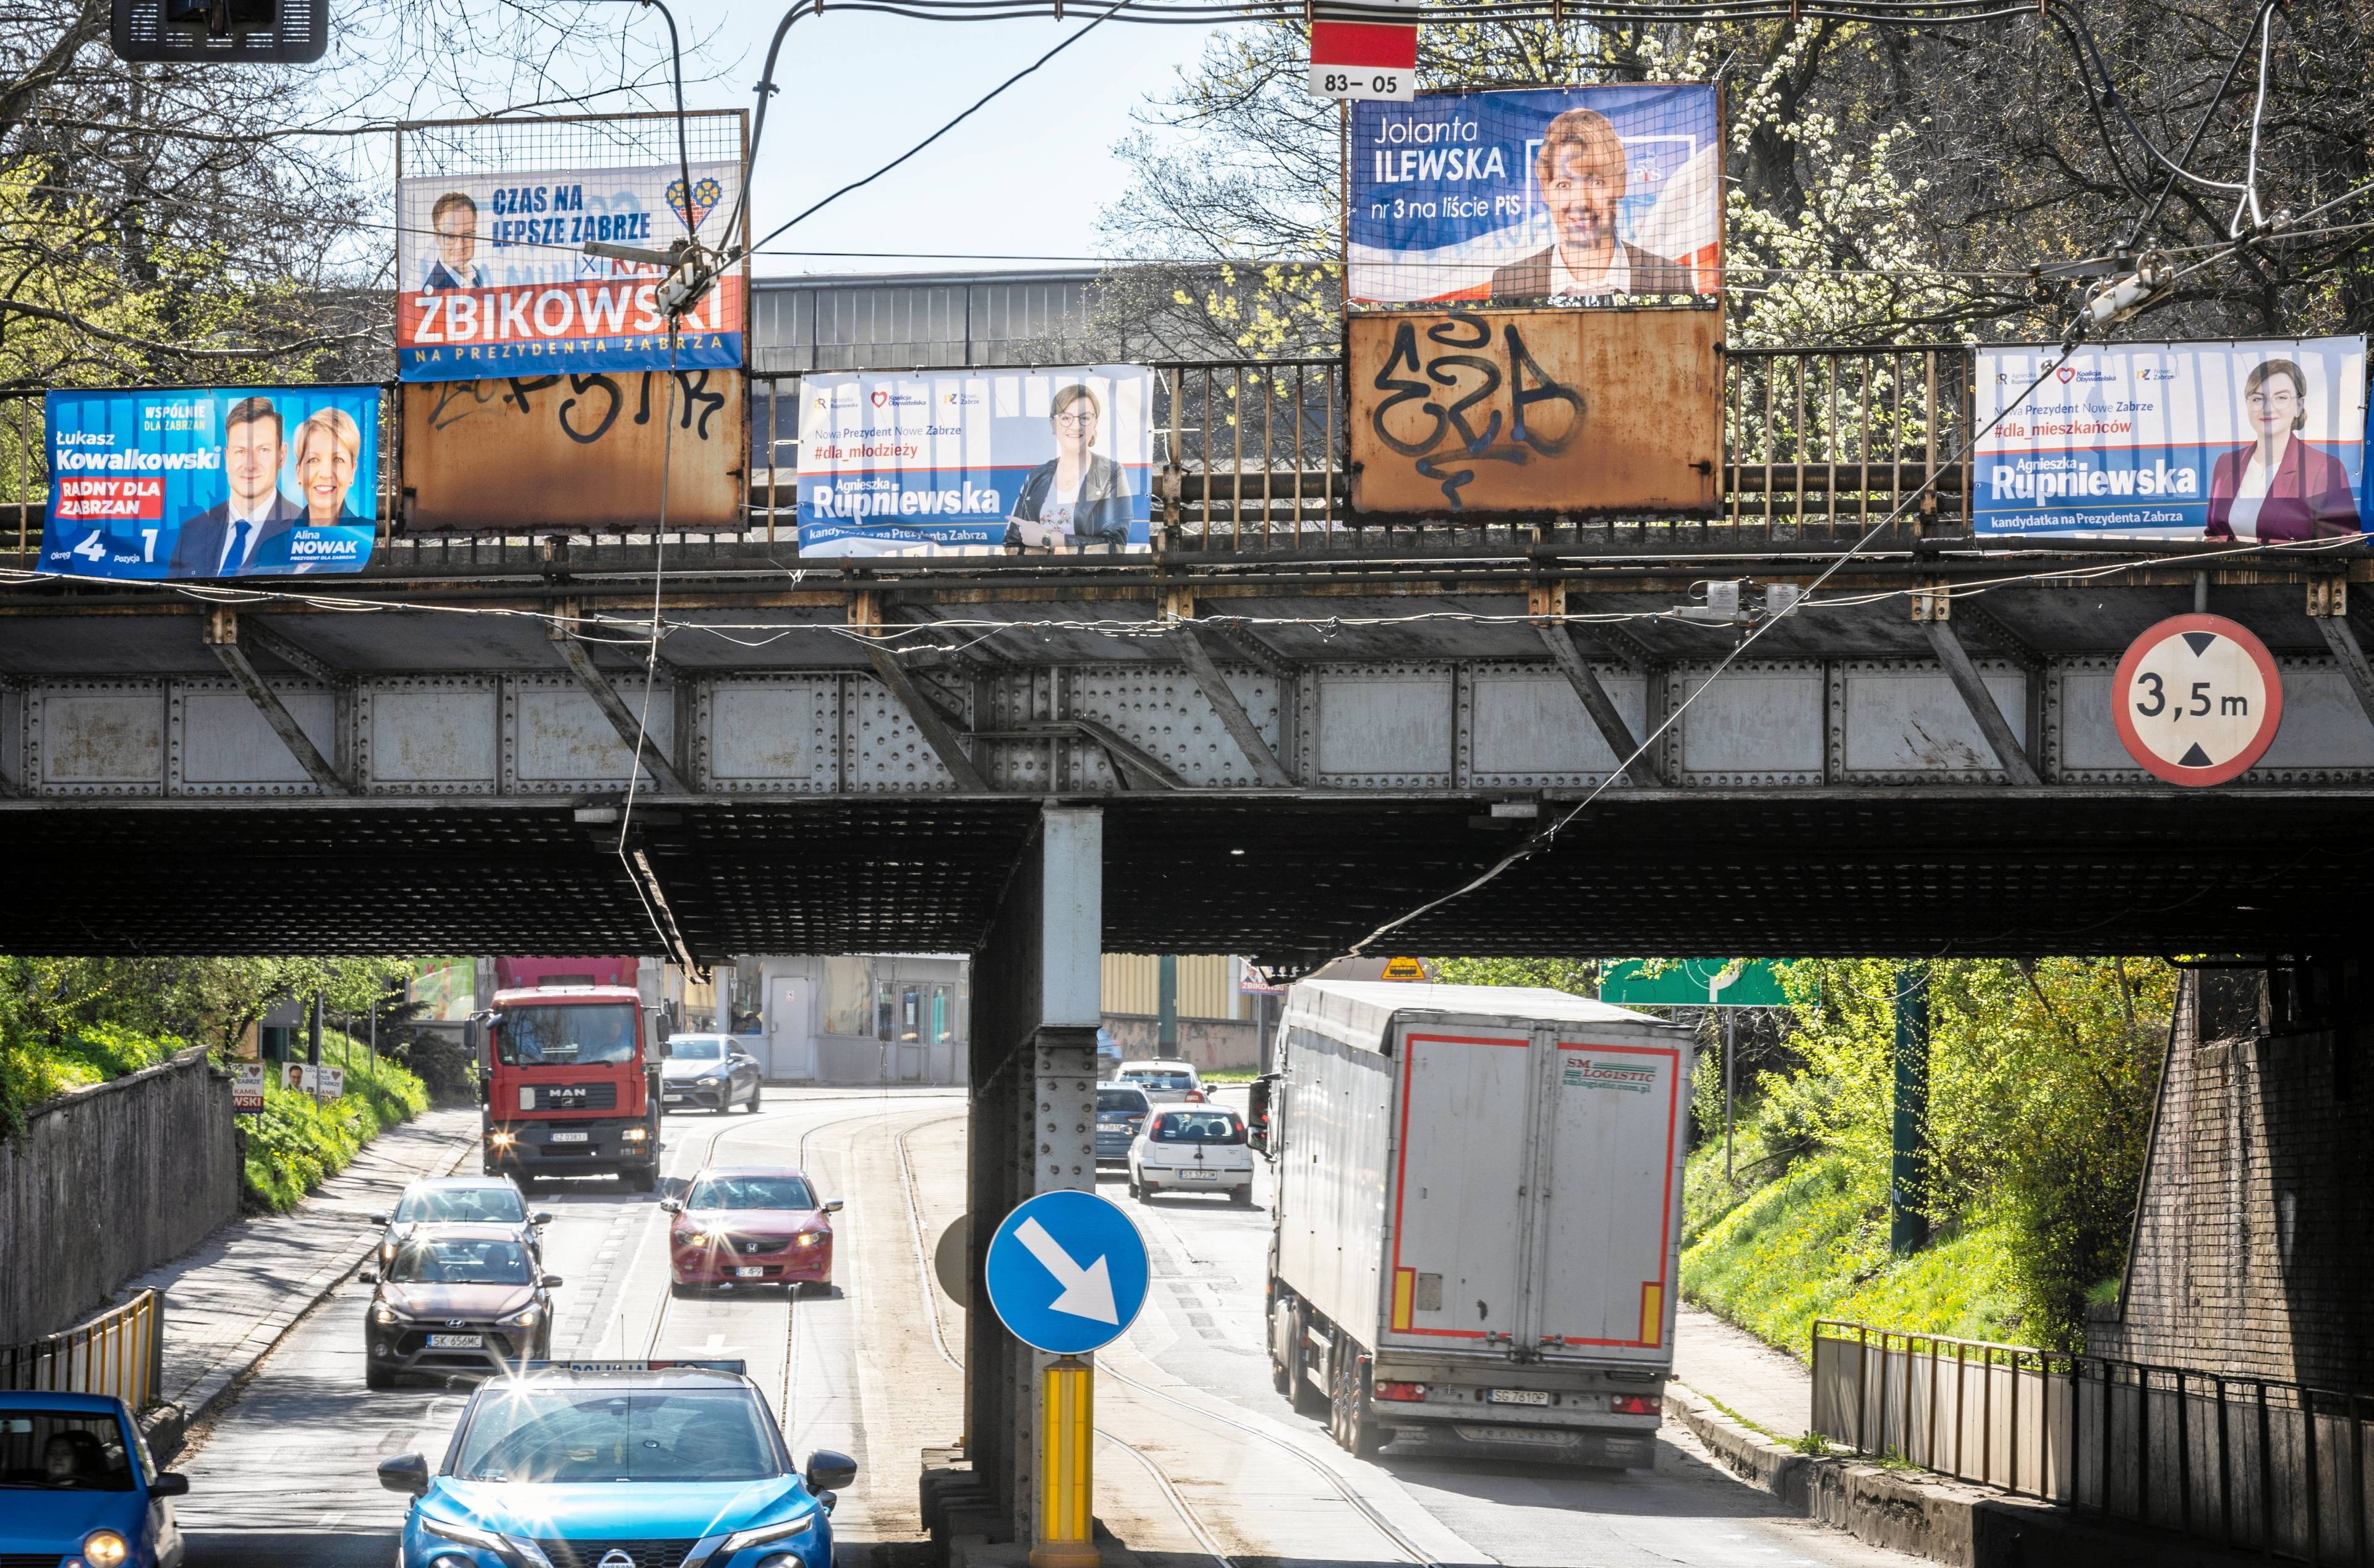 Widok na wiadukt drogowy oklejonym plakatami wyborczymi